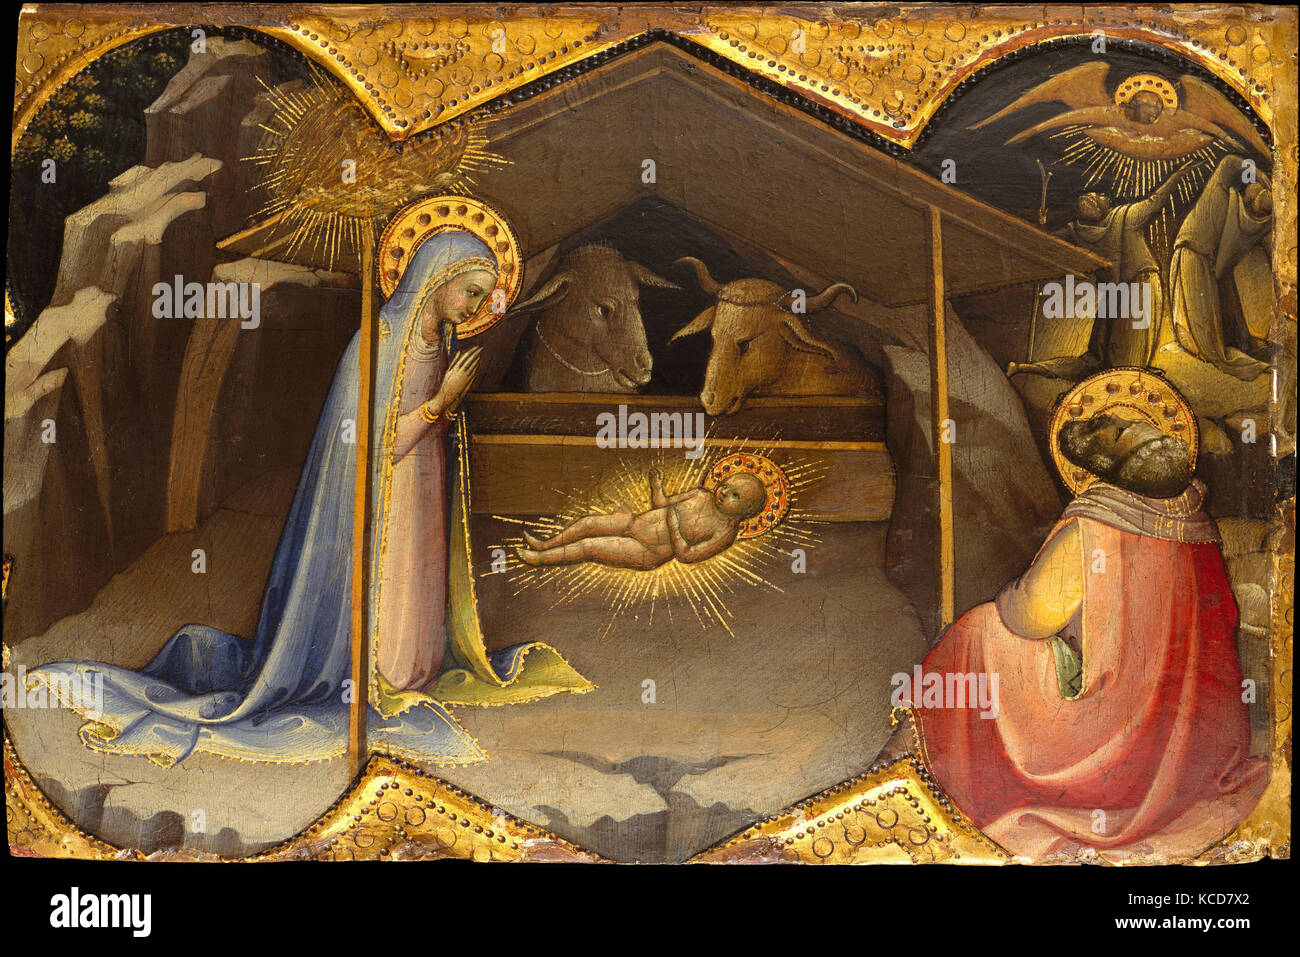 La nativité, ca. 1406-10, Tempera sur bois, la masse d'or, 8 3/4 x 12 1/4 in. (22,2 x 31,1 cm), peintures, Lorenzo Monaco (Piero Banque D'Images